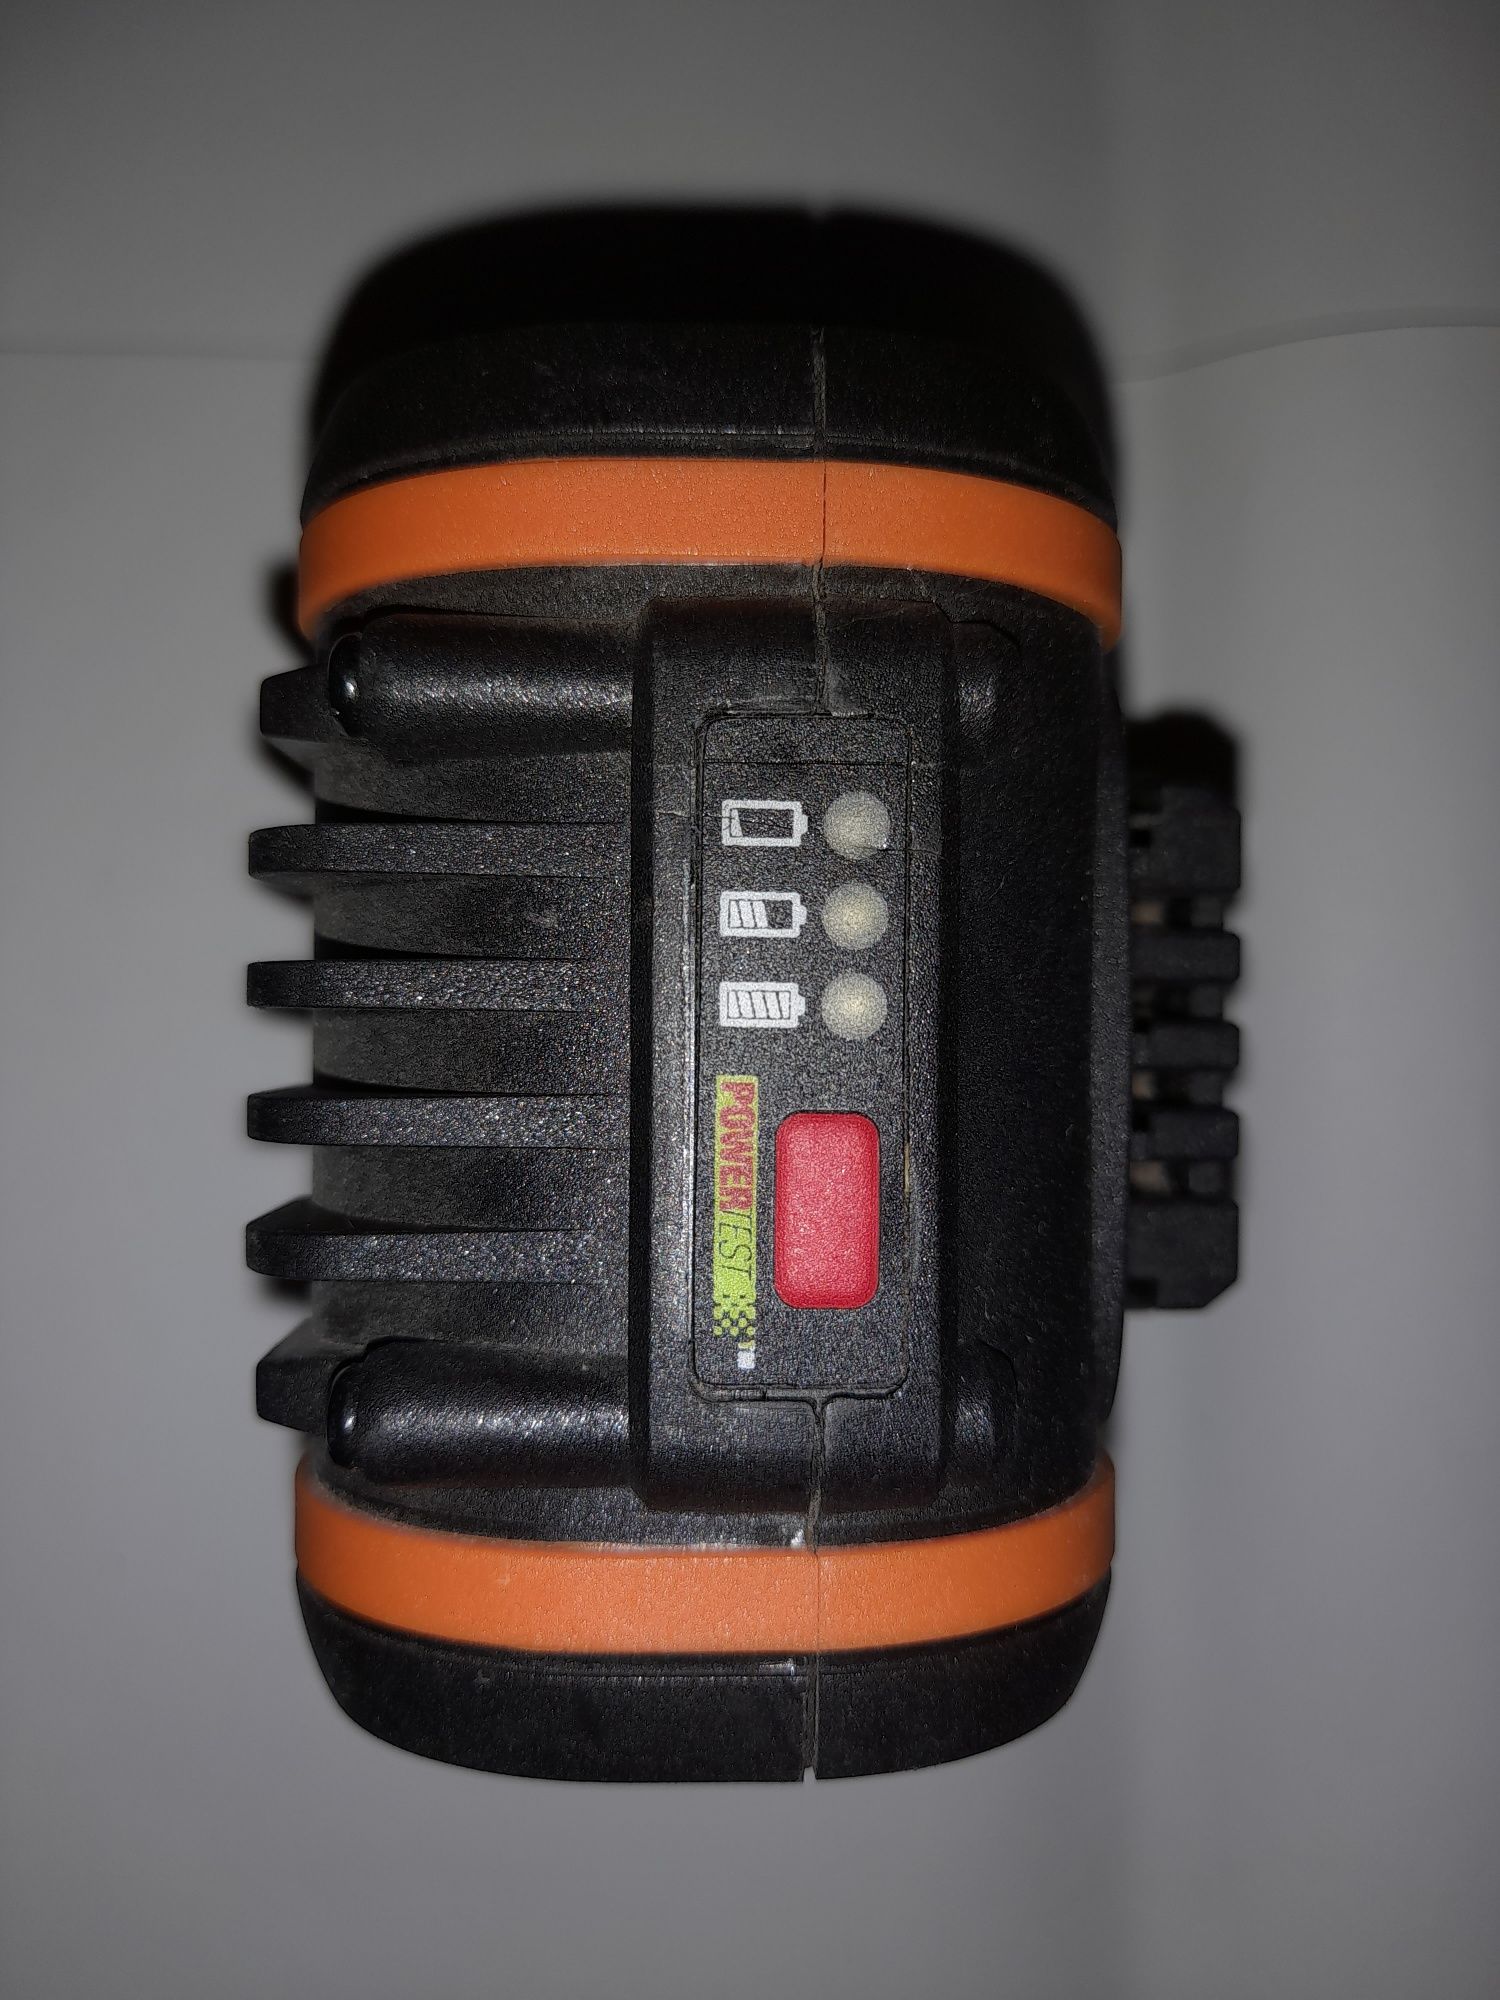 Worx акумулятор для електроінструменту



Відправка укрпоштою, новою